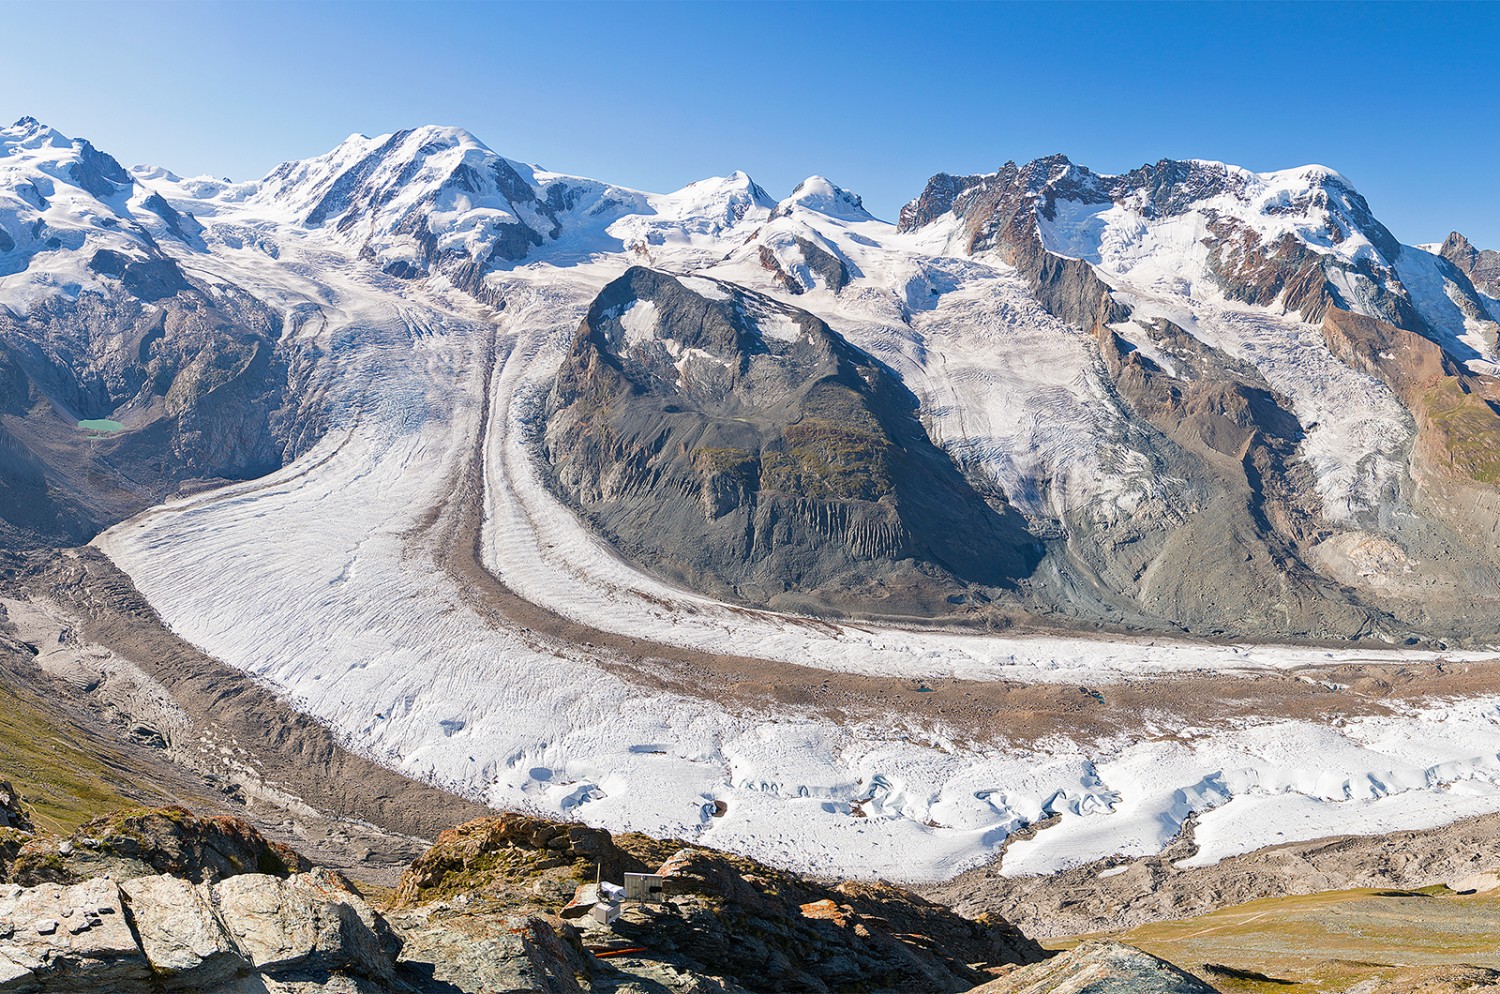 Überwältigend: Monte Rosa, Liskamm und Breithorn mit ihren Gletschern. Der mächtige Arm in der Mitte ist der Grenzgletscher, links der Gornergletscher. Bild: Andreas Wipf